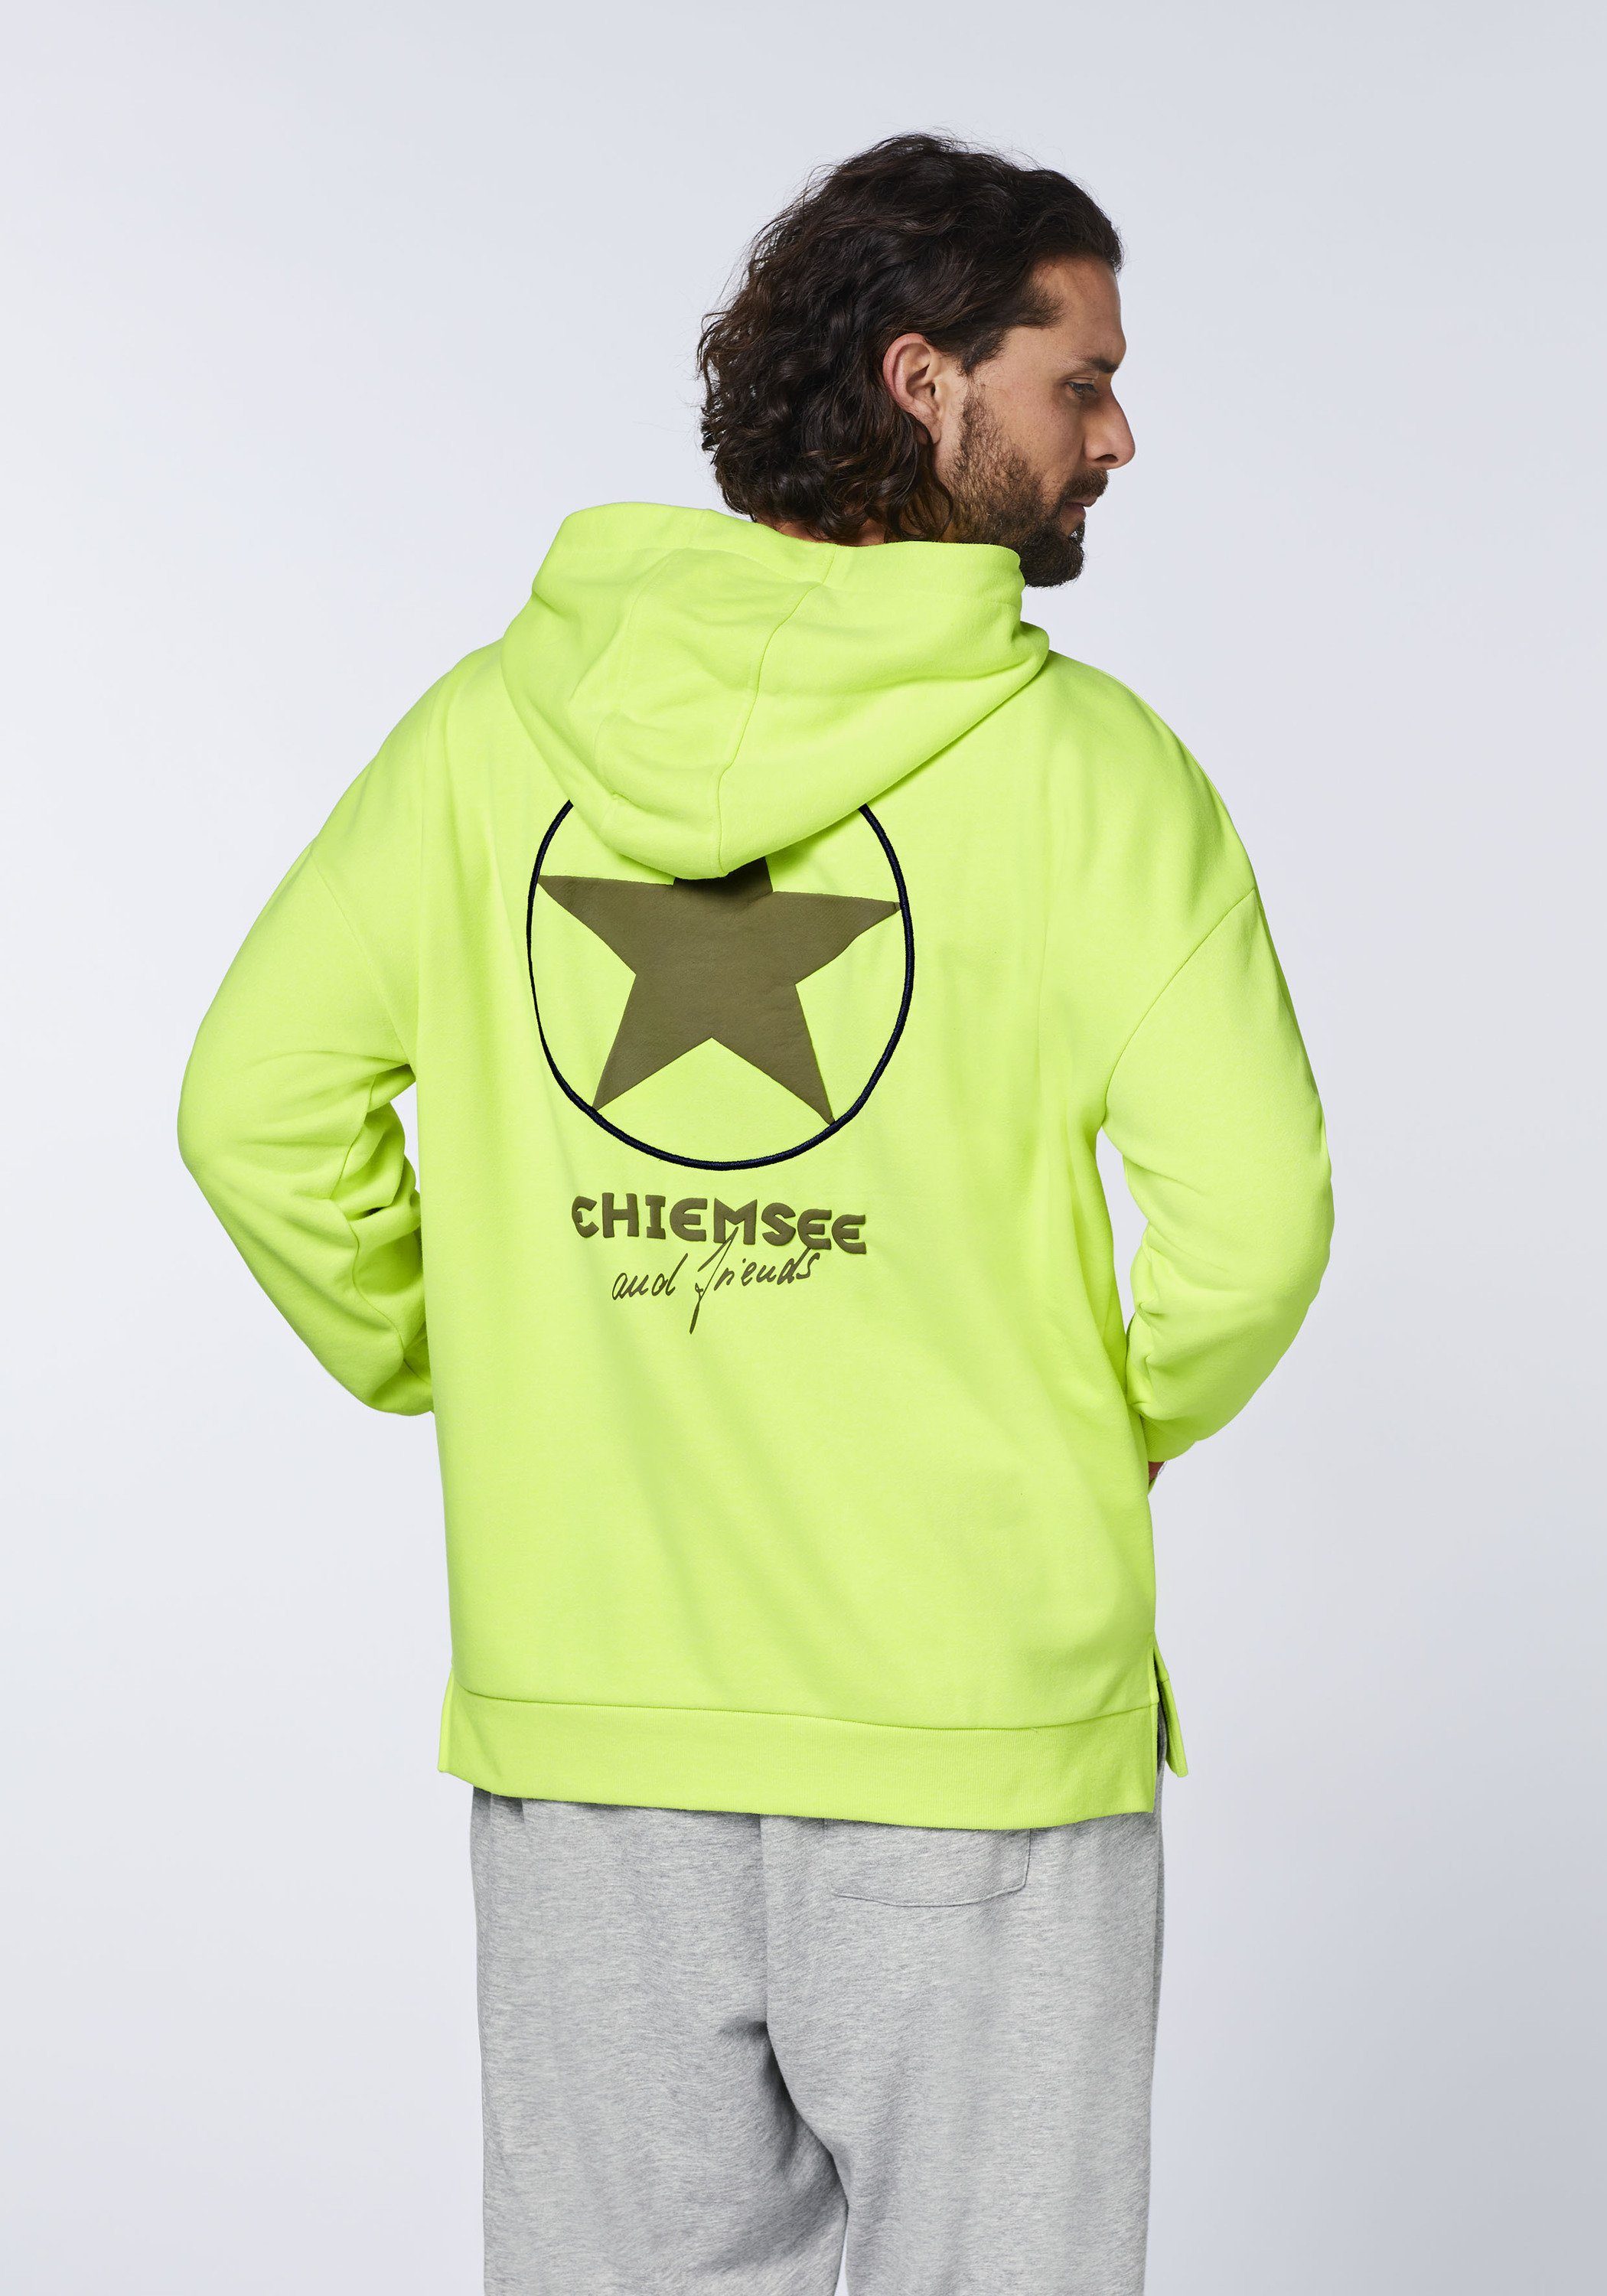 Print Stitching Yellow mit 1 Hoodie Safety Kapuzensweatshirt 13-0630 Chiemsee und